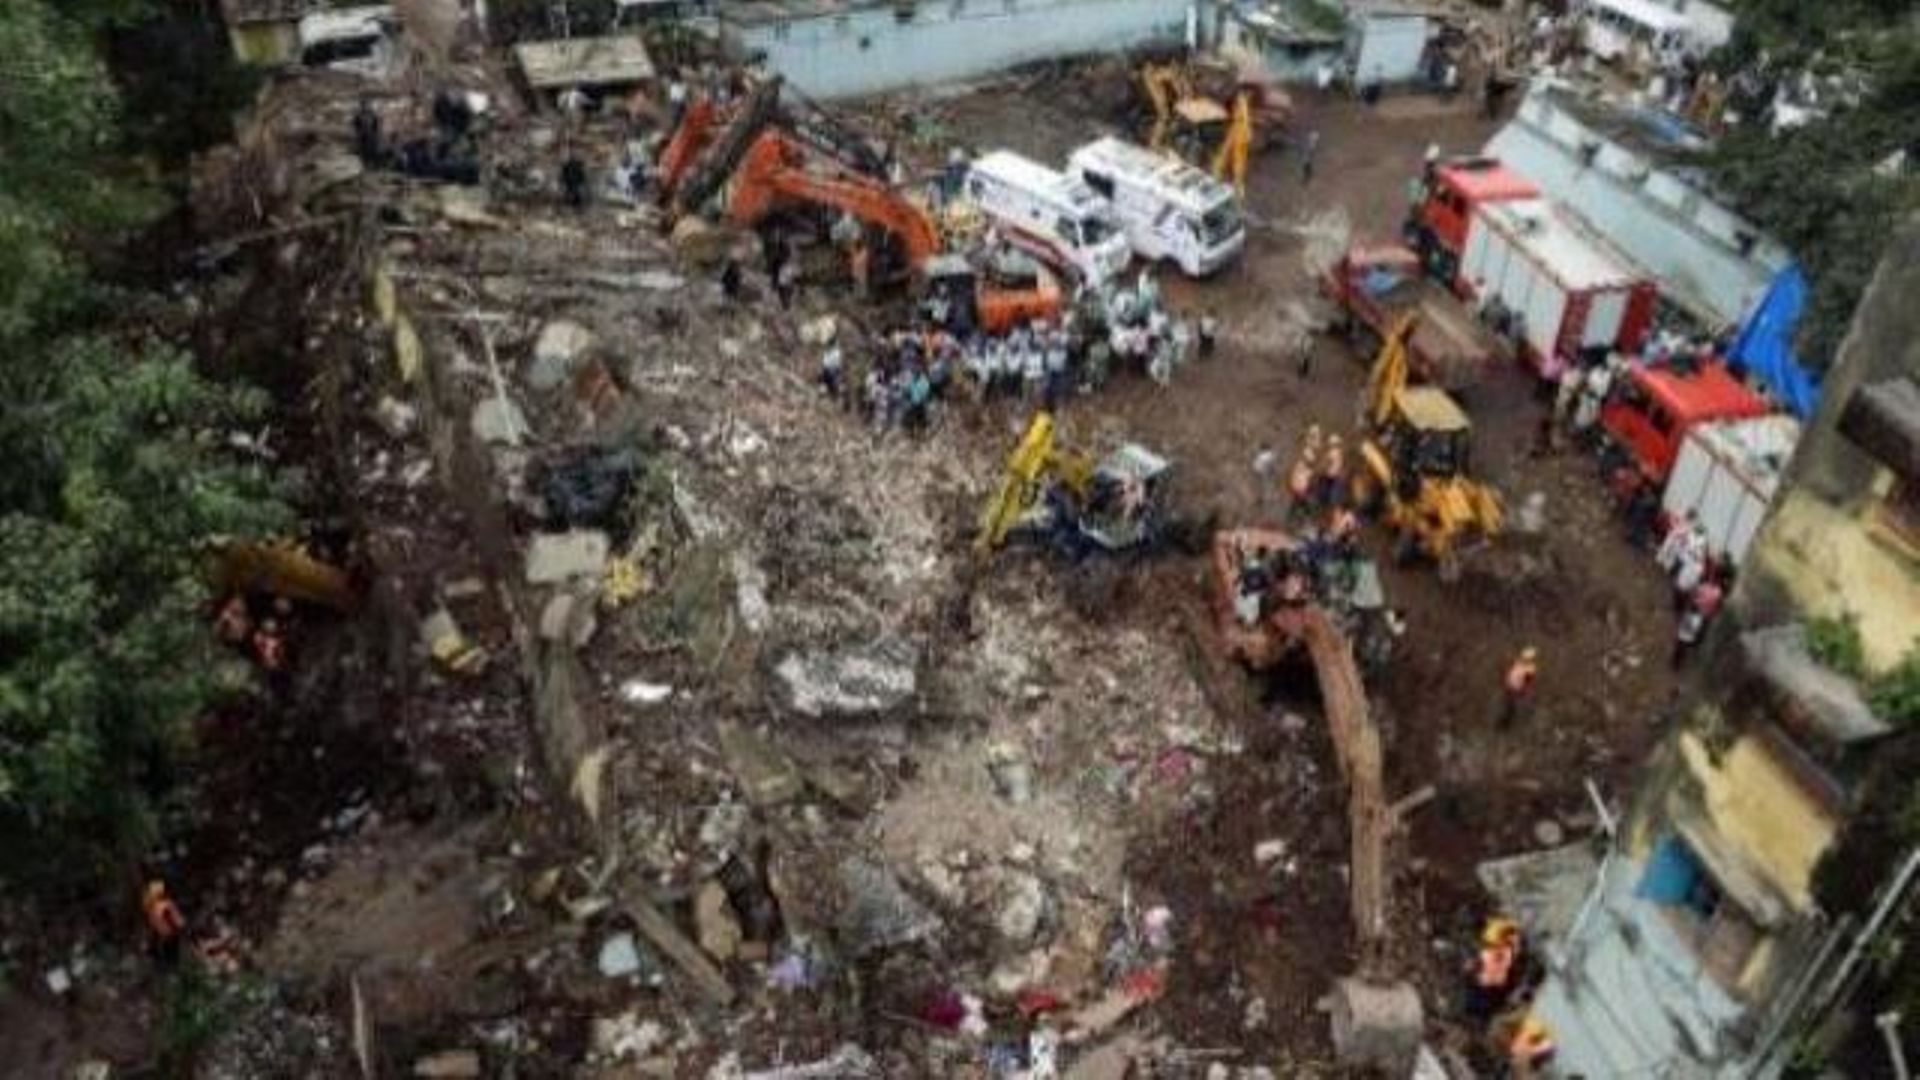 immeuble-effondre-a-bombay-60-morts-retrouves-dans-les-decombres